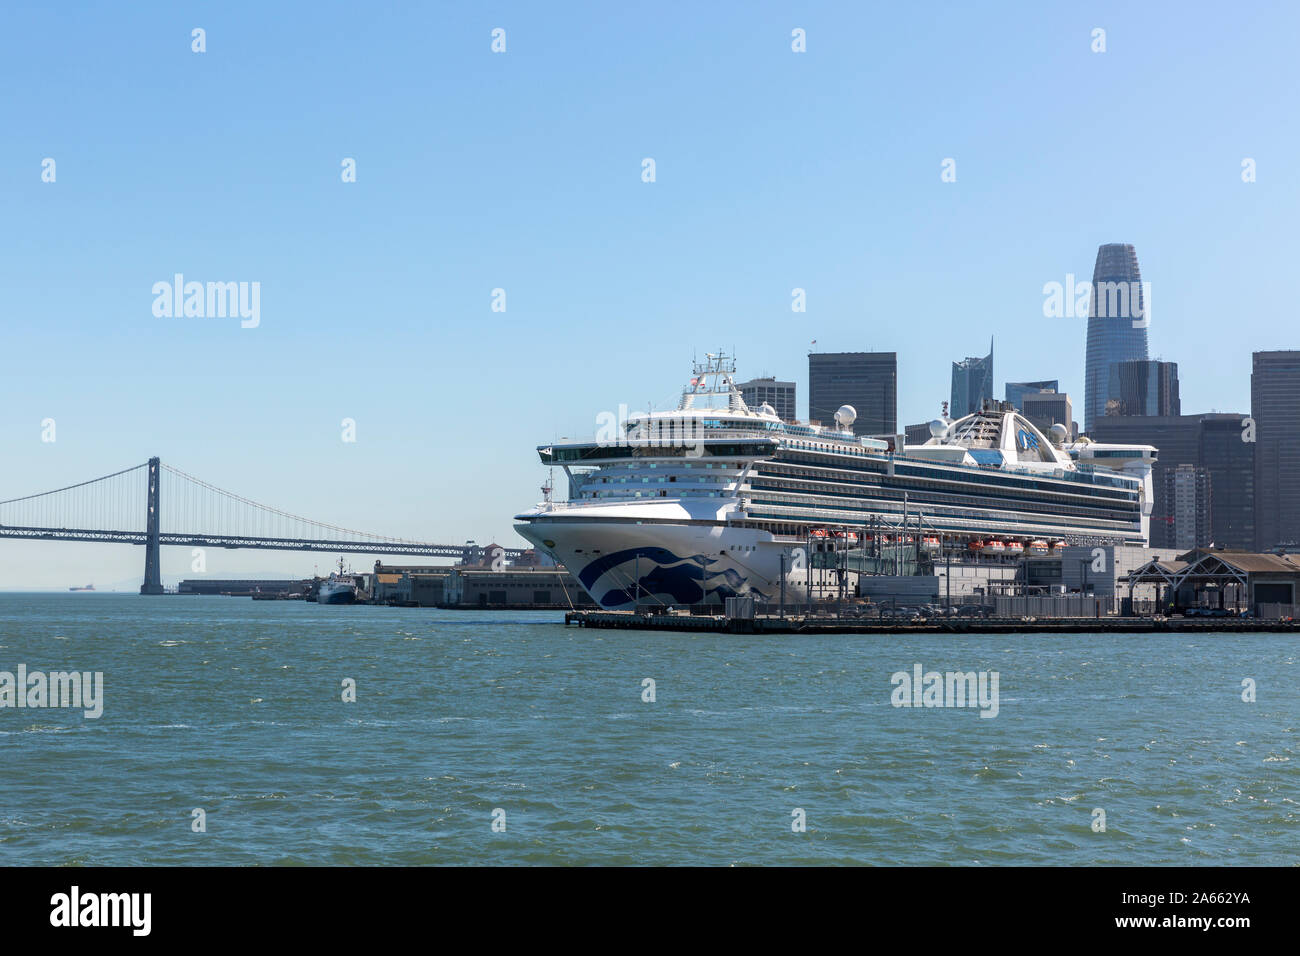 SAN FRANCISCO, USA - 2 octobre 2019 : La Star Princess bateau de croisière amarré dans le port de San Francisco avec l'horizon de la ville et le pont de la Baie derrière. Banque D'Images